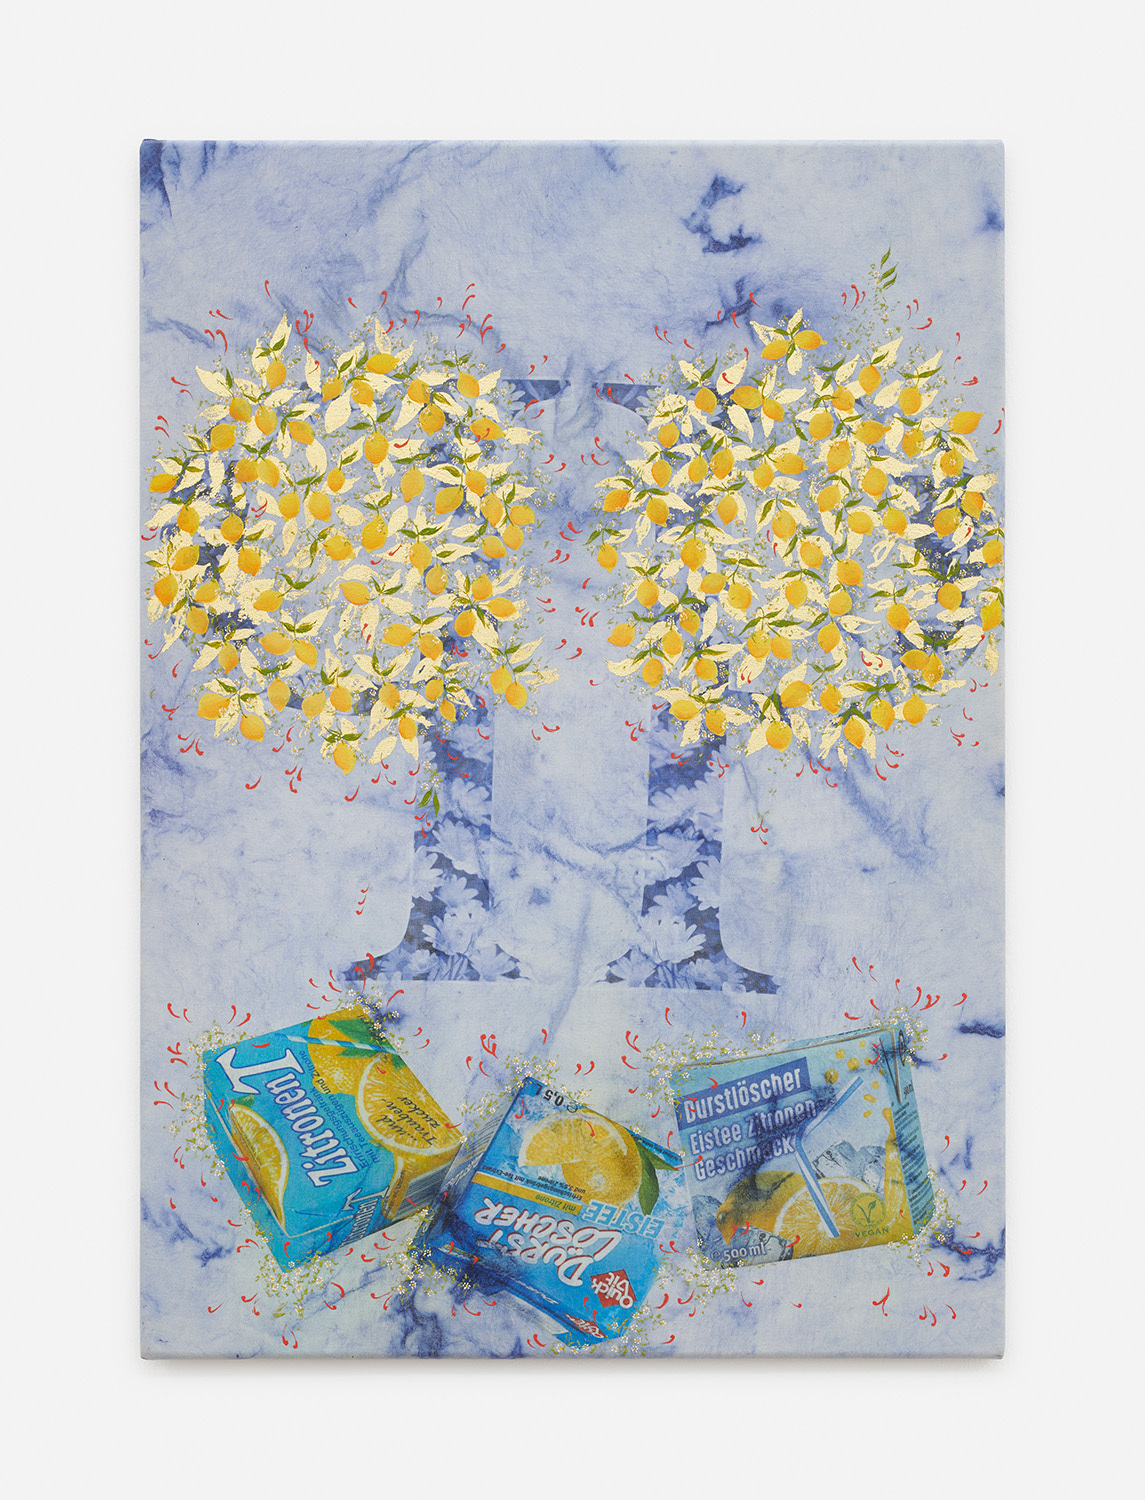 Elif Saydam, Making lemonade, 2021. 23k gold, inkjet transfer and oil on canvas, 59 × 41.5 cm